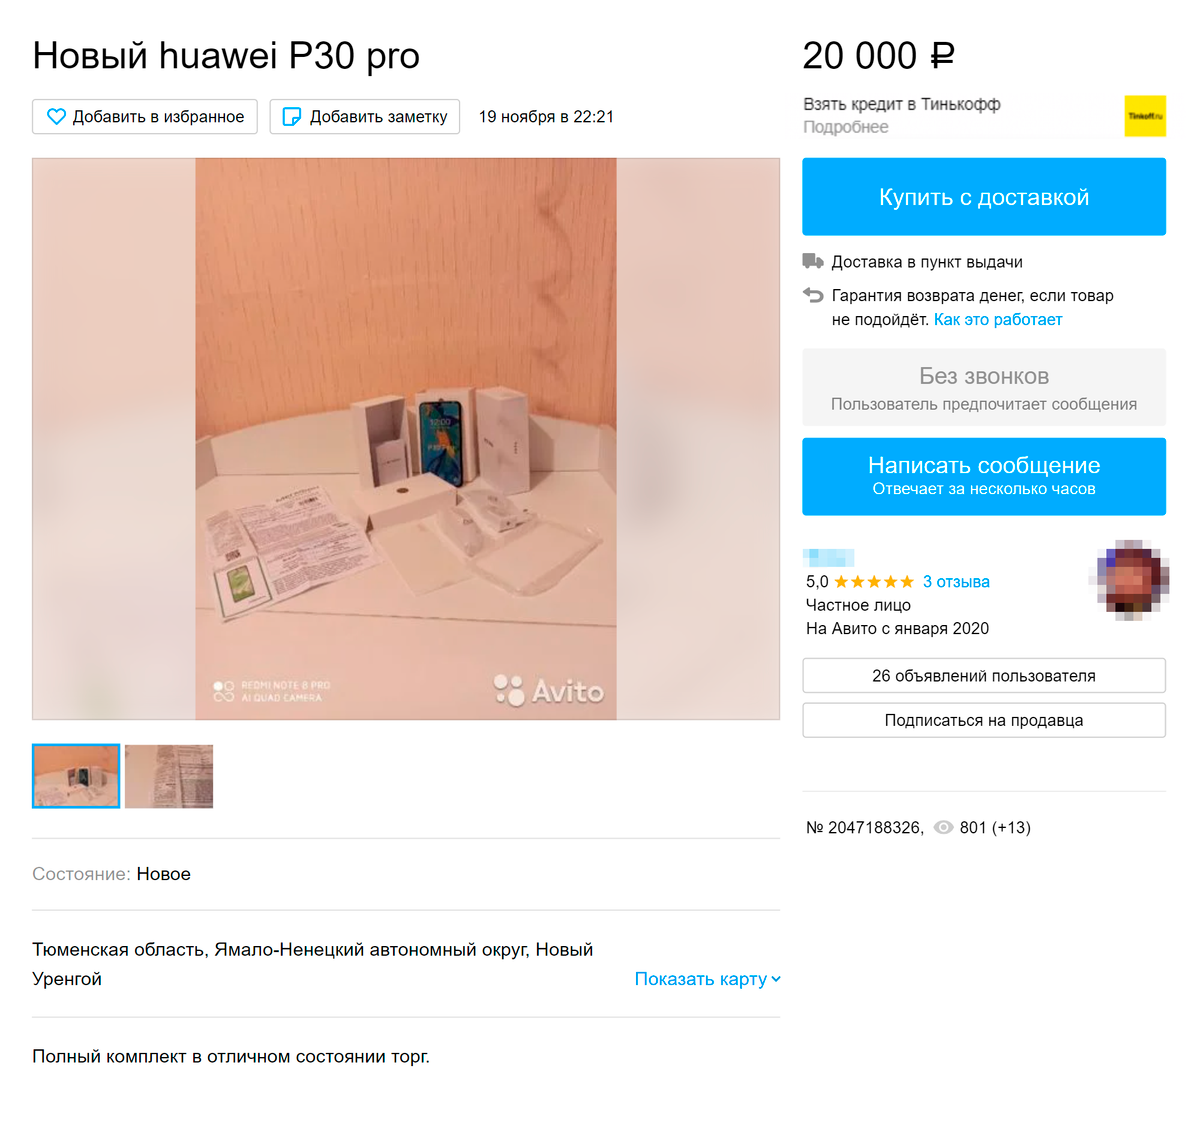 Цена нового телефона в объявлении сильно занижена. Продавец приложил чек о покупке, который оказался фальшивым. Источник: avito.ru